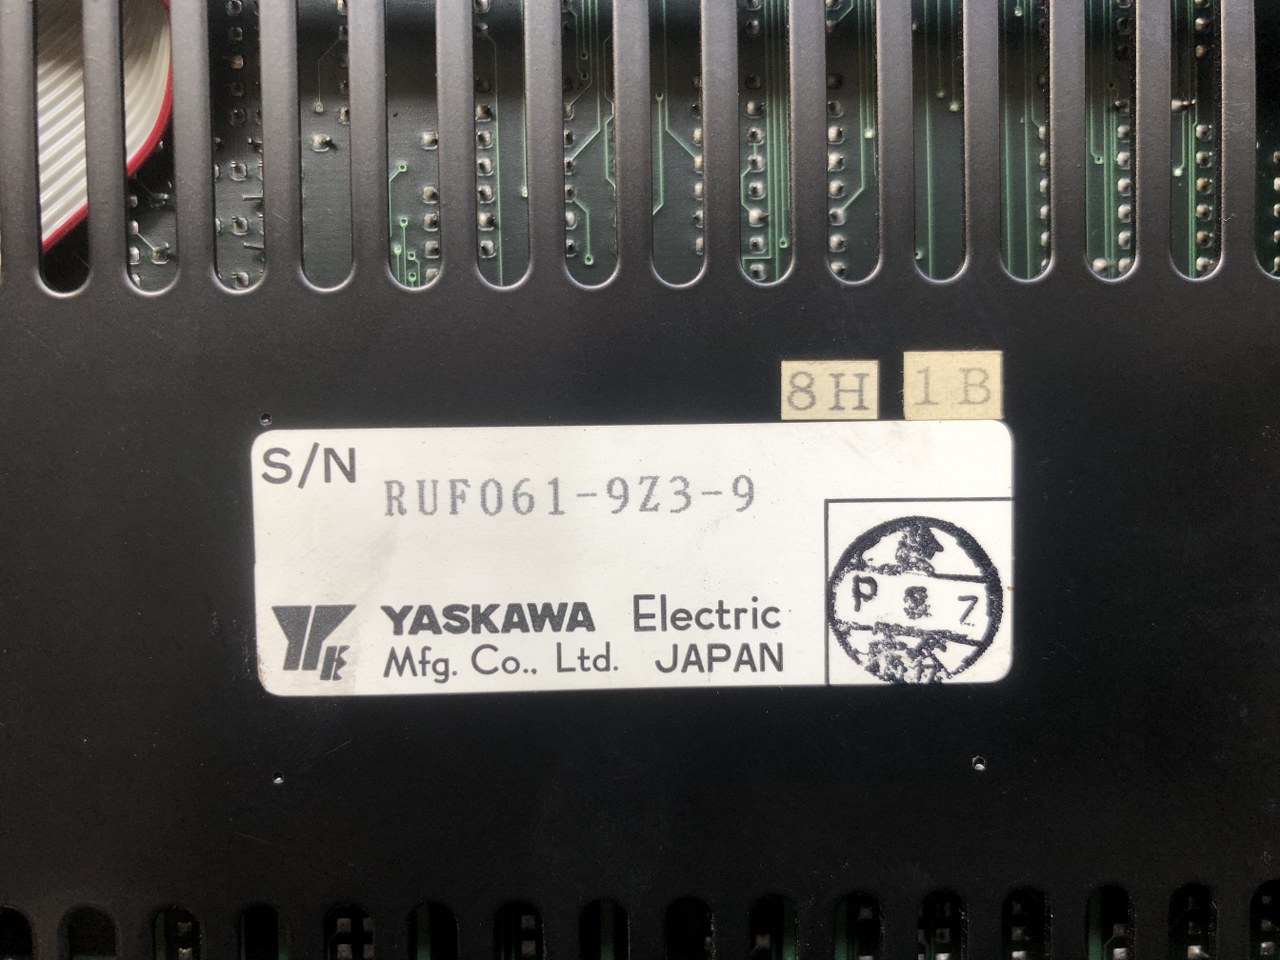 中古お買い得品・1山販売等 【motionpack-110】JEFMC-C023P-12 安川電機 YASKAWA ELECTRIC